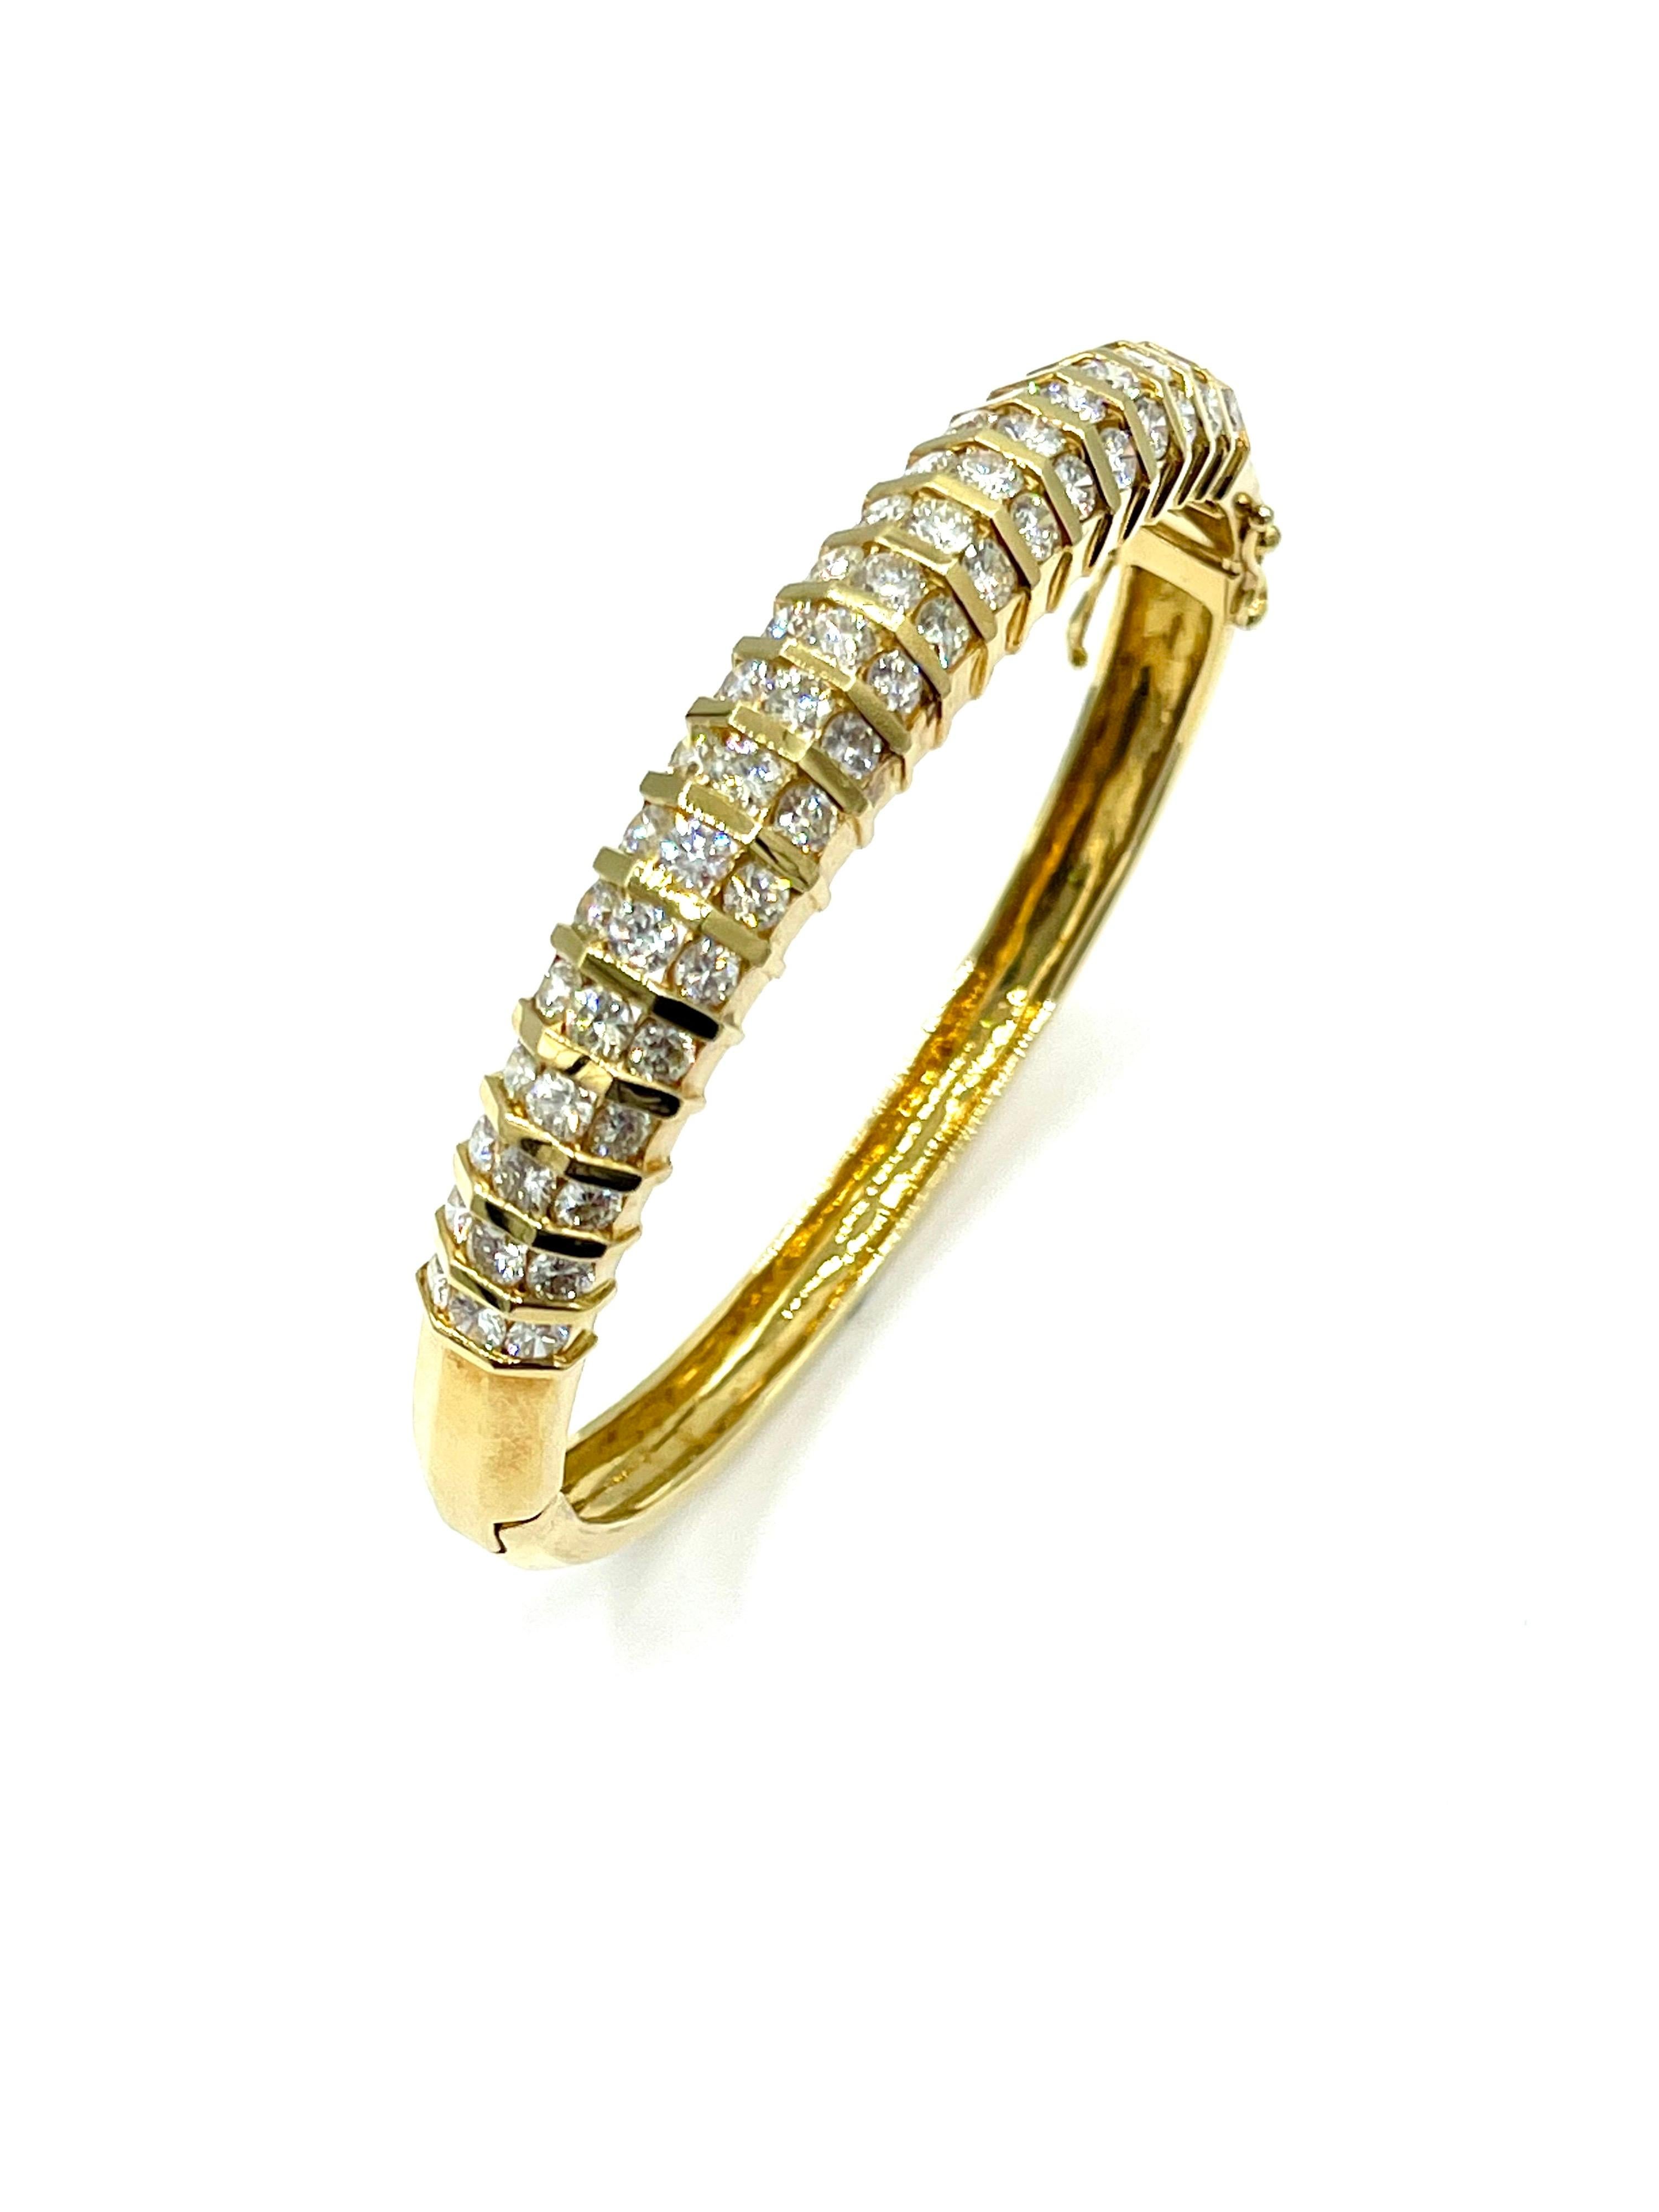 Dies ist eine schöne Retro-Stil Diamond Armreif Armband!  Die 57 runden Brillanten sind in 18 Karat Gelbgold gefasst und haben ein Gesamtgewicht von 5,32 Karat.  Die Diamanten werden als G-H Farbe, VS Reinheit eingestuft.  Diese Diamanten haben ein